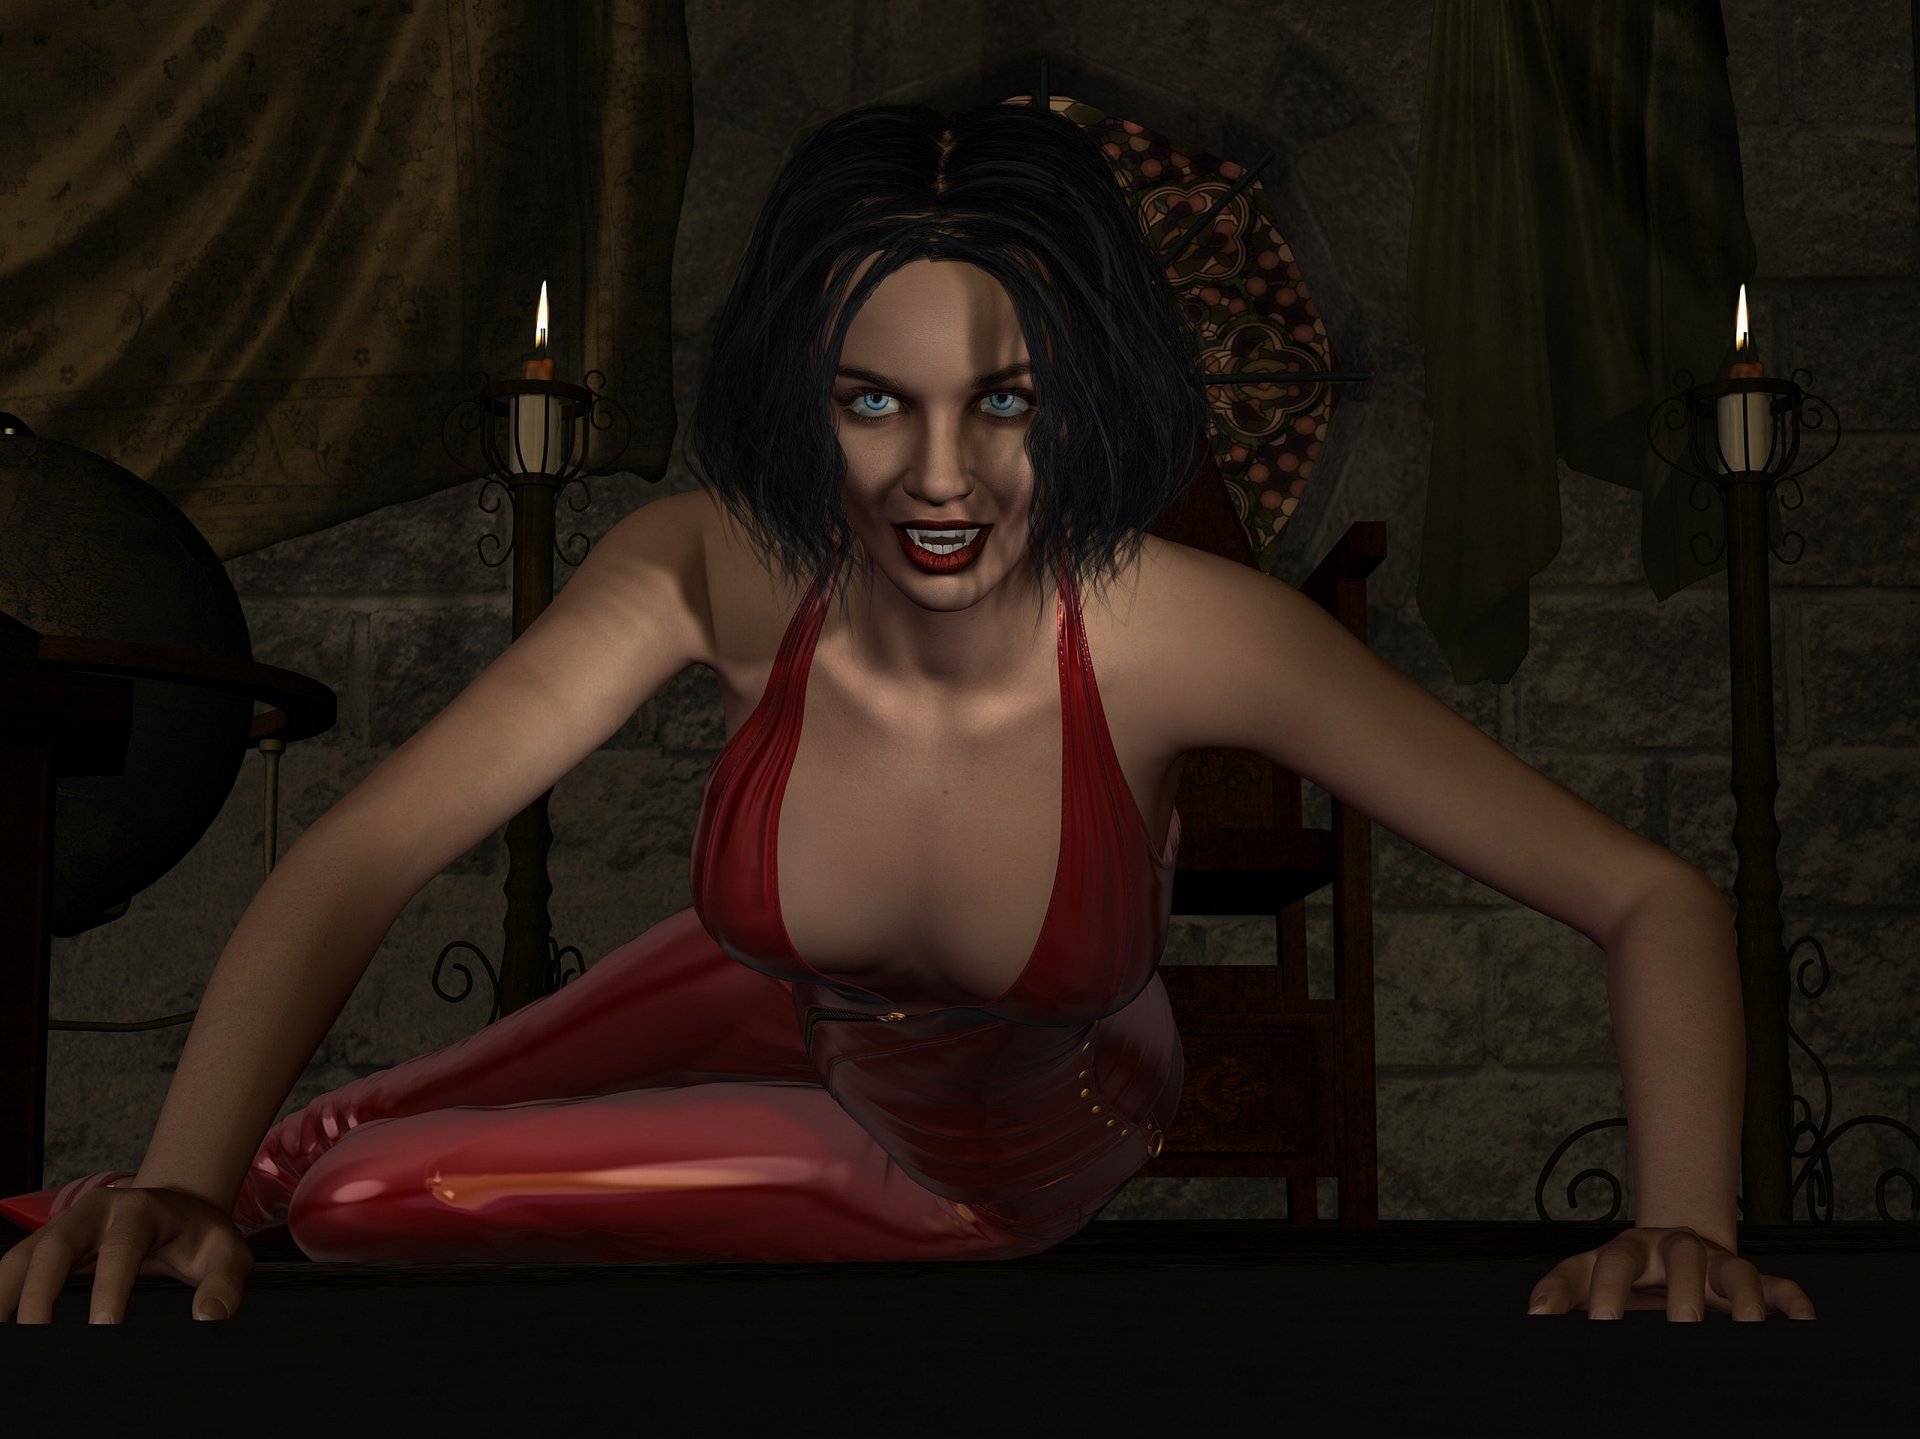 Эротика в исполнении сексуальной вампирши